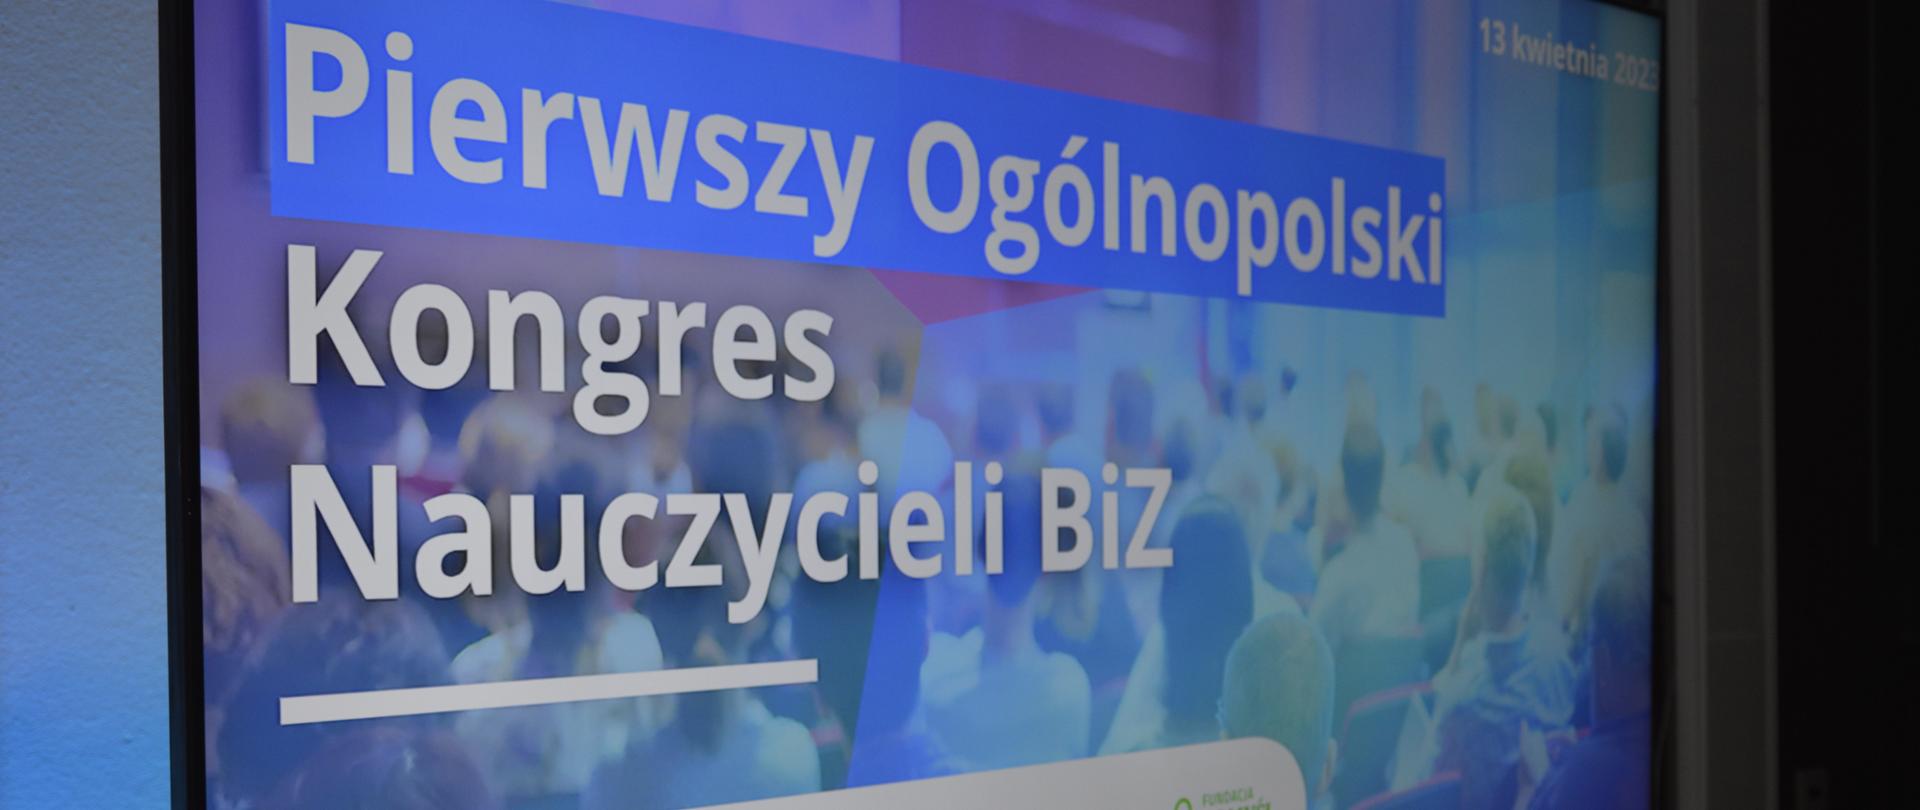 Widok na monitor z napisem Pierwszy ogólnopolski Kongres Nauczycieli BiZ.